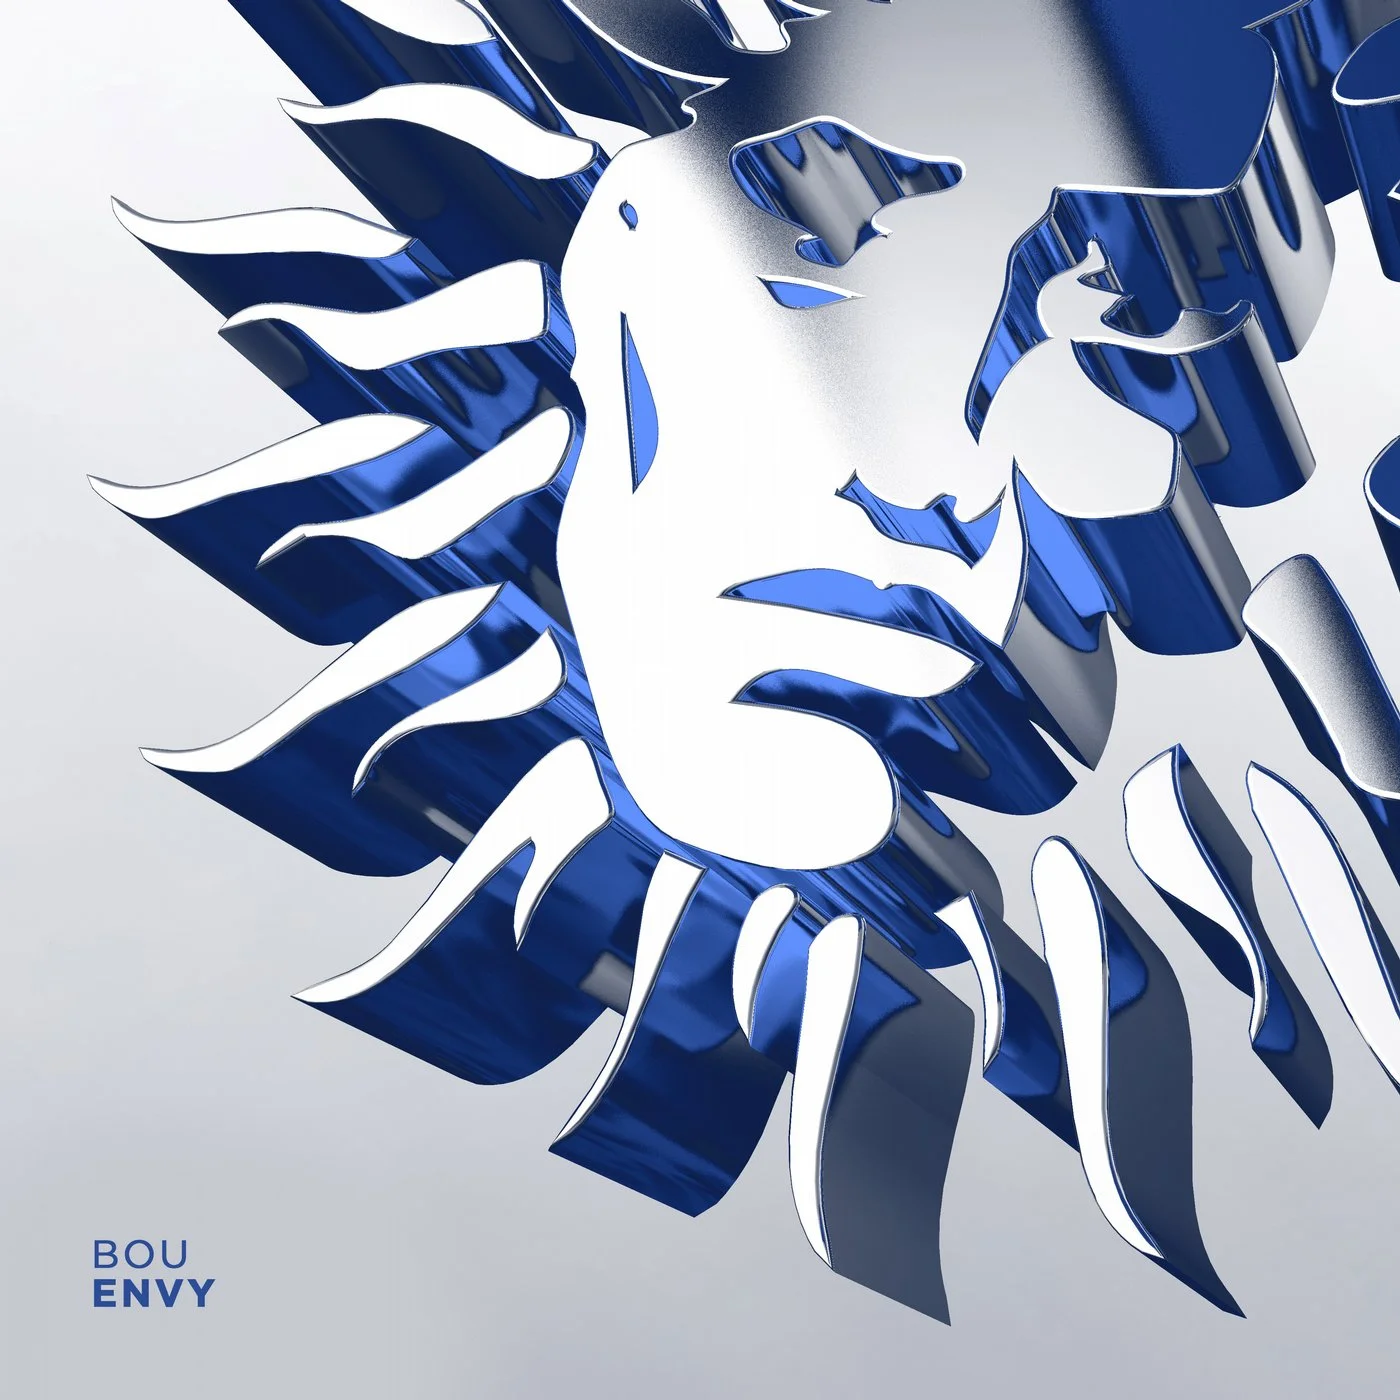 Envy - Its Her (Original Mix)